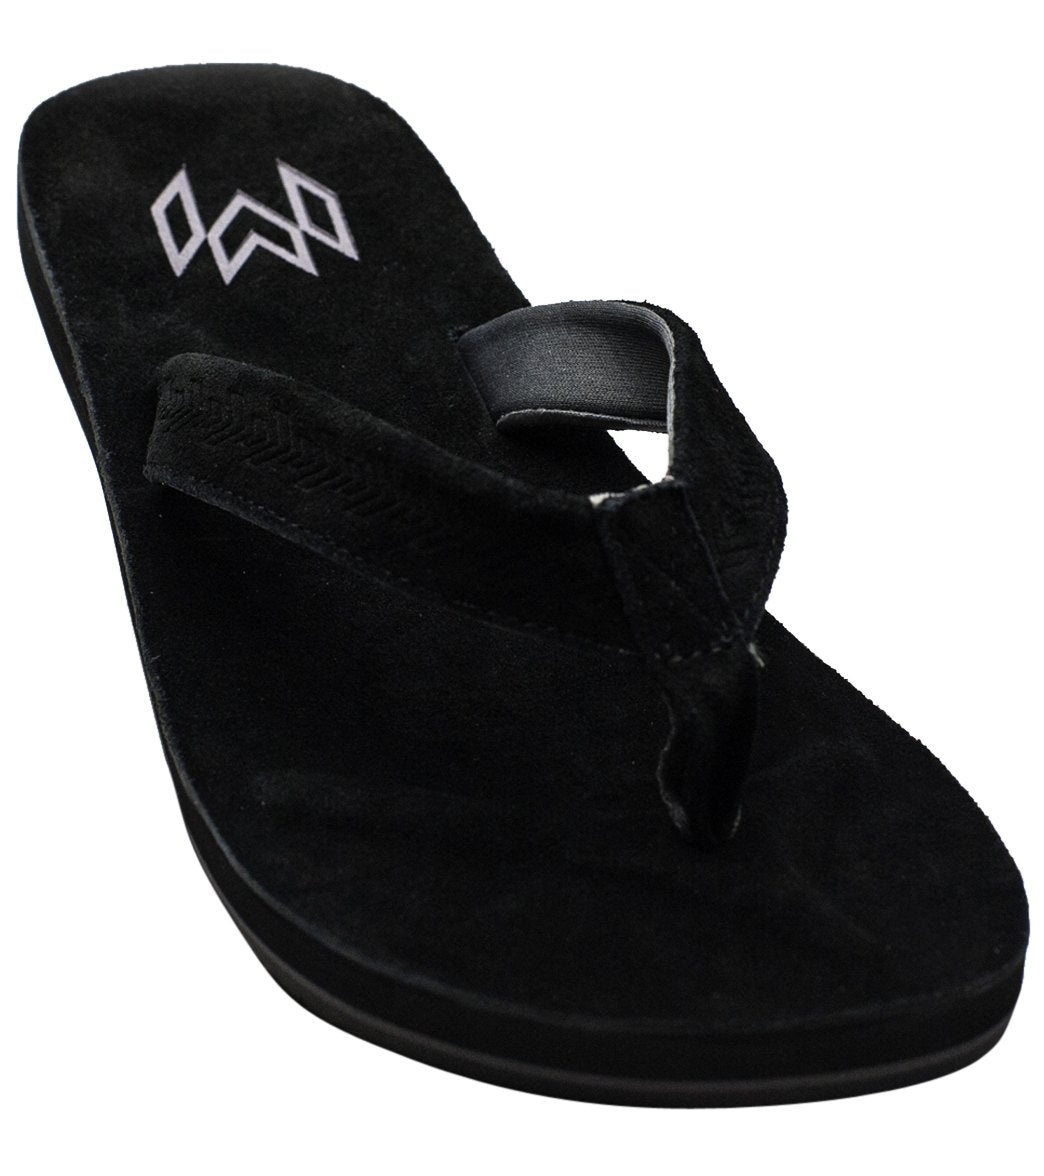 Malvados Men's Jack Leather Flip Flop - Onyx 7/8 - Swimoutlet.com